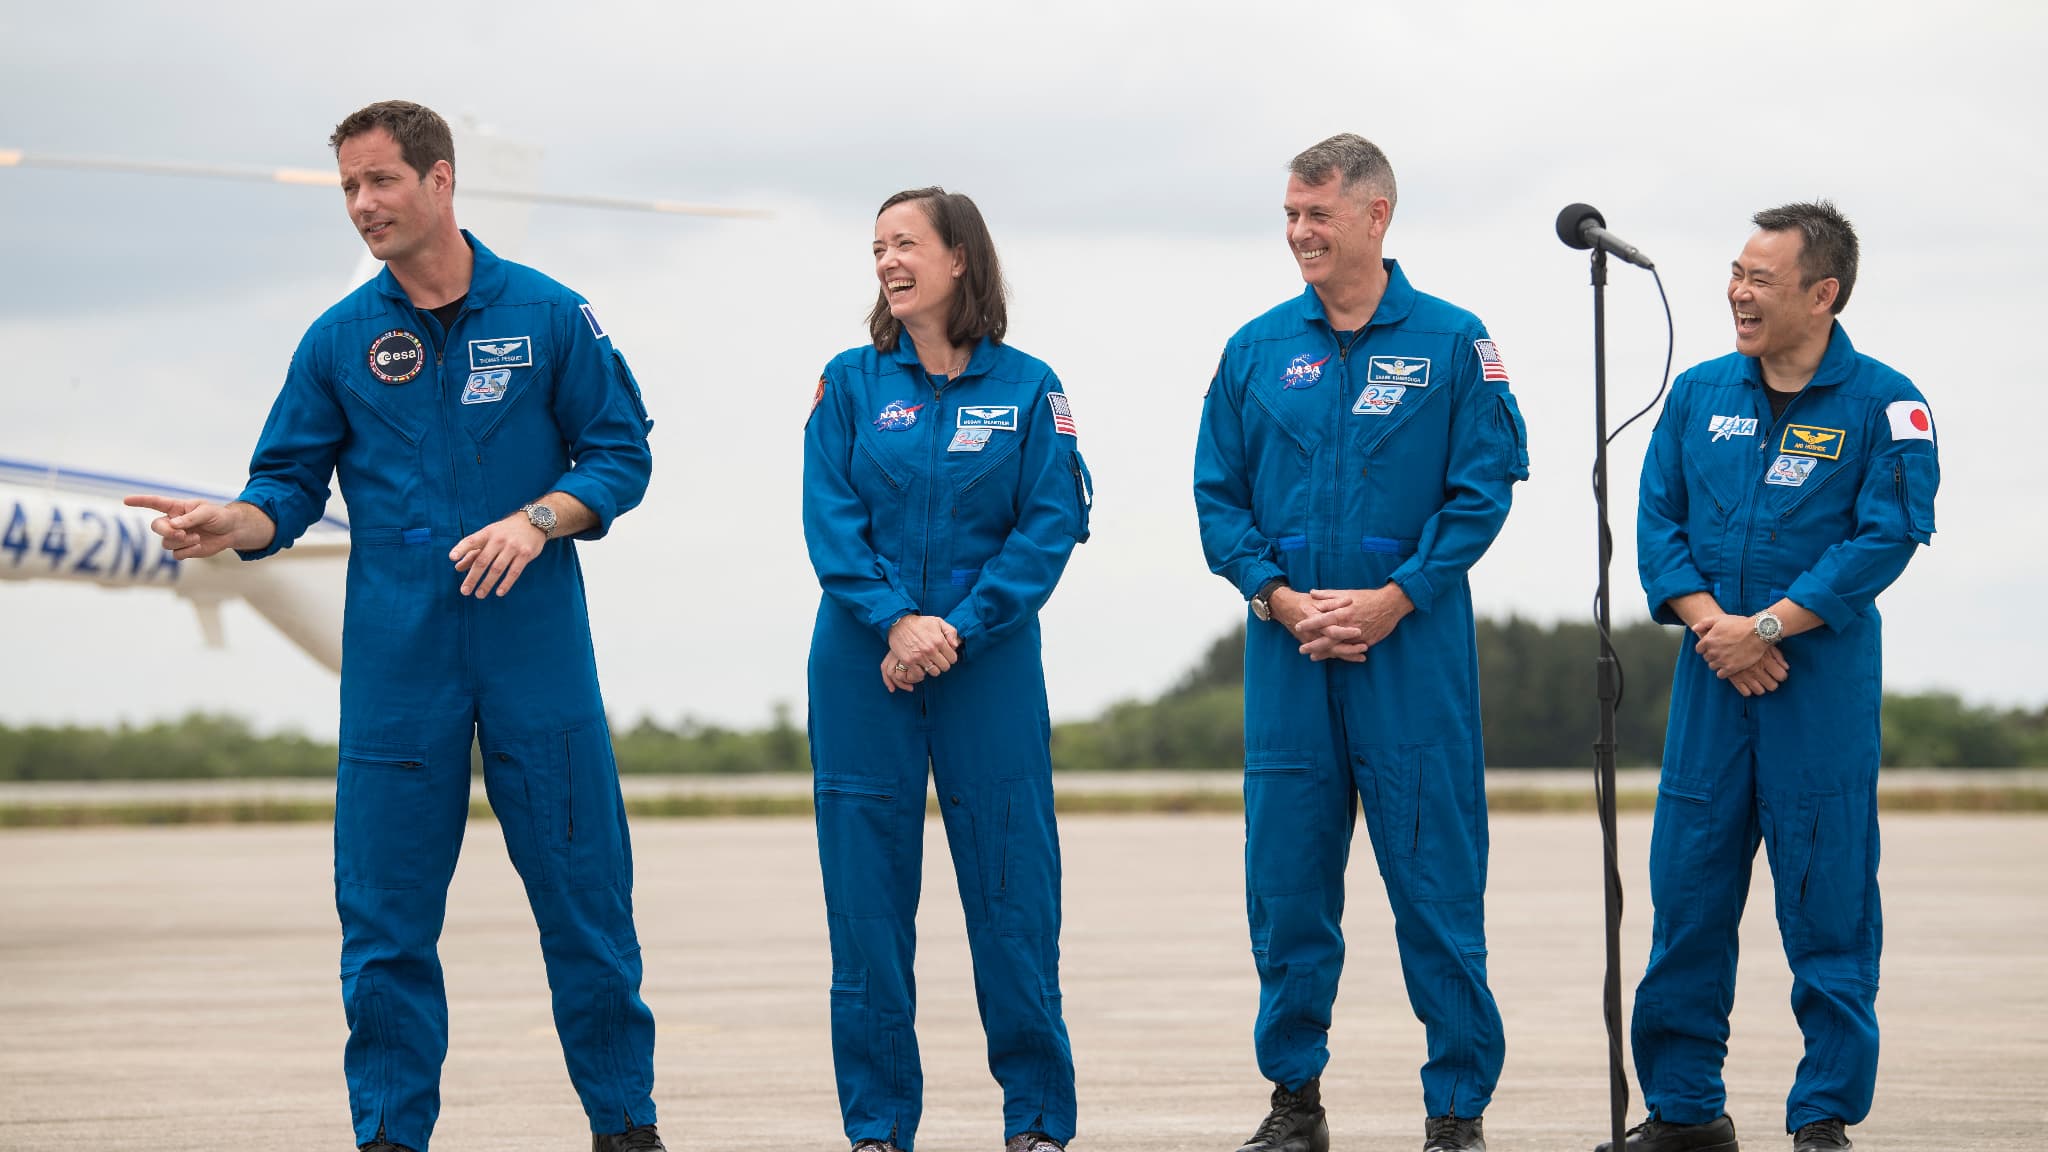 Le départ de Thomas Pesquet pour l'ISS repoussé de 24 heures, annonce la Nasa